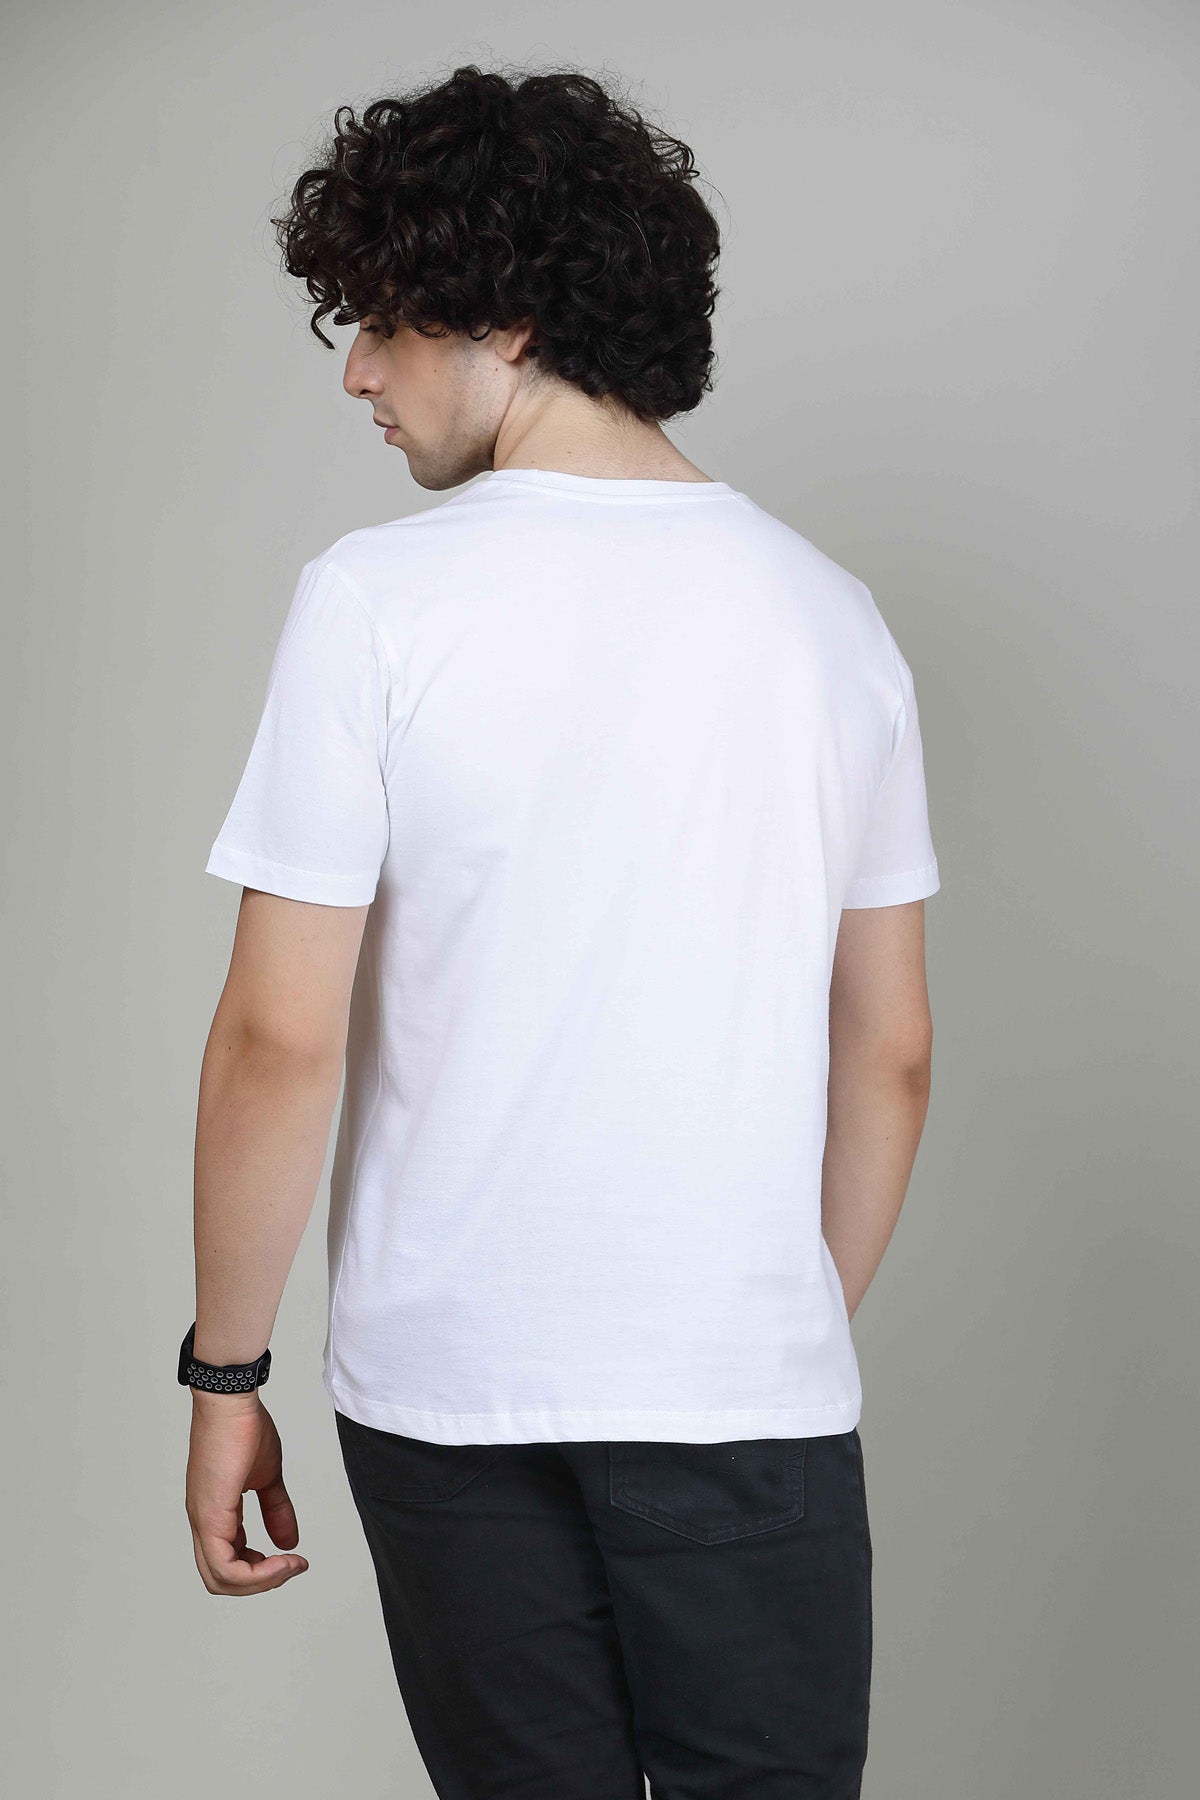 Radiant White - Mens Half sleeves T- Shirt T-SHIRT LOVER